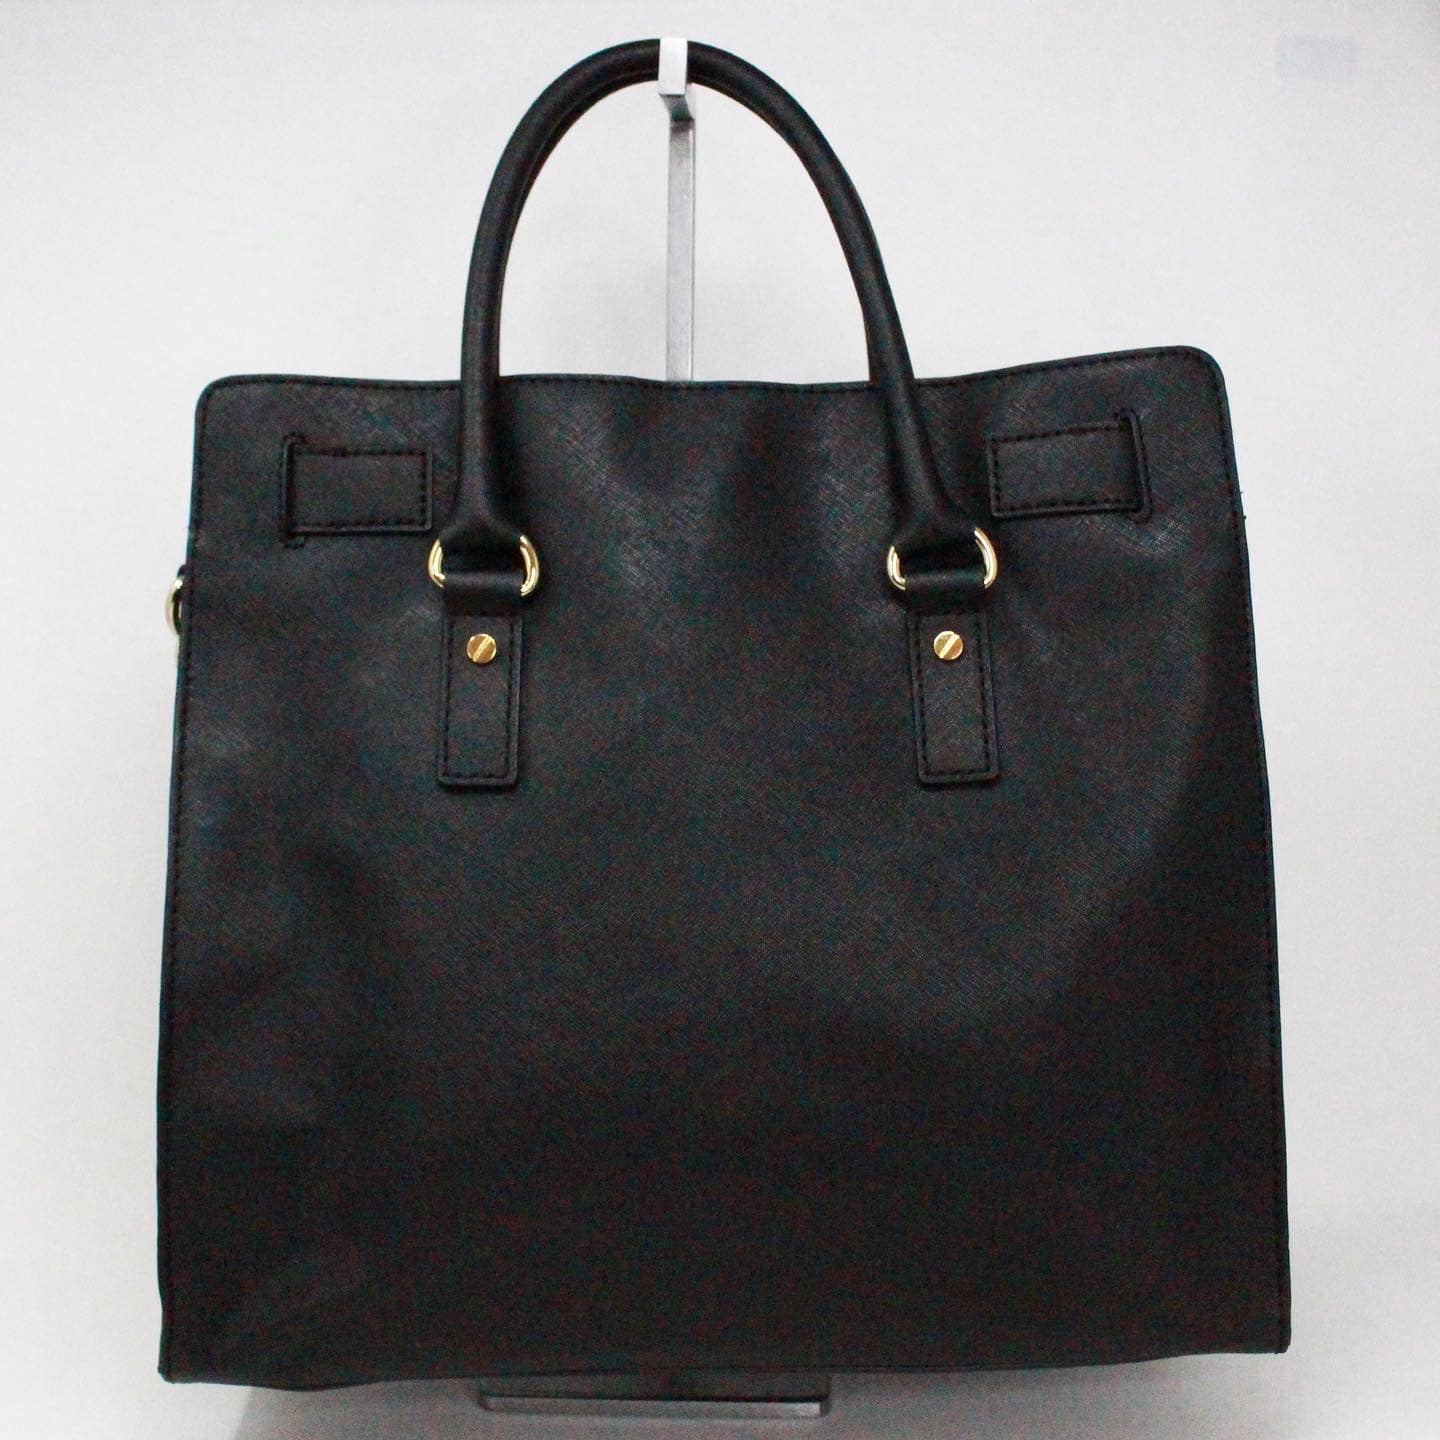 Black Saffiano Leather Tote Bag